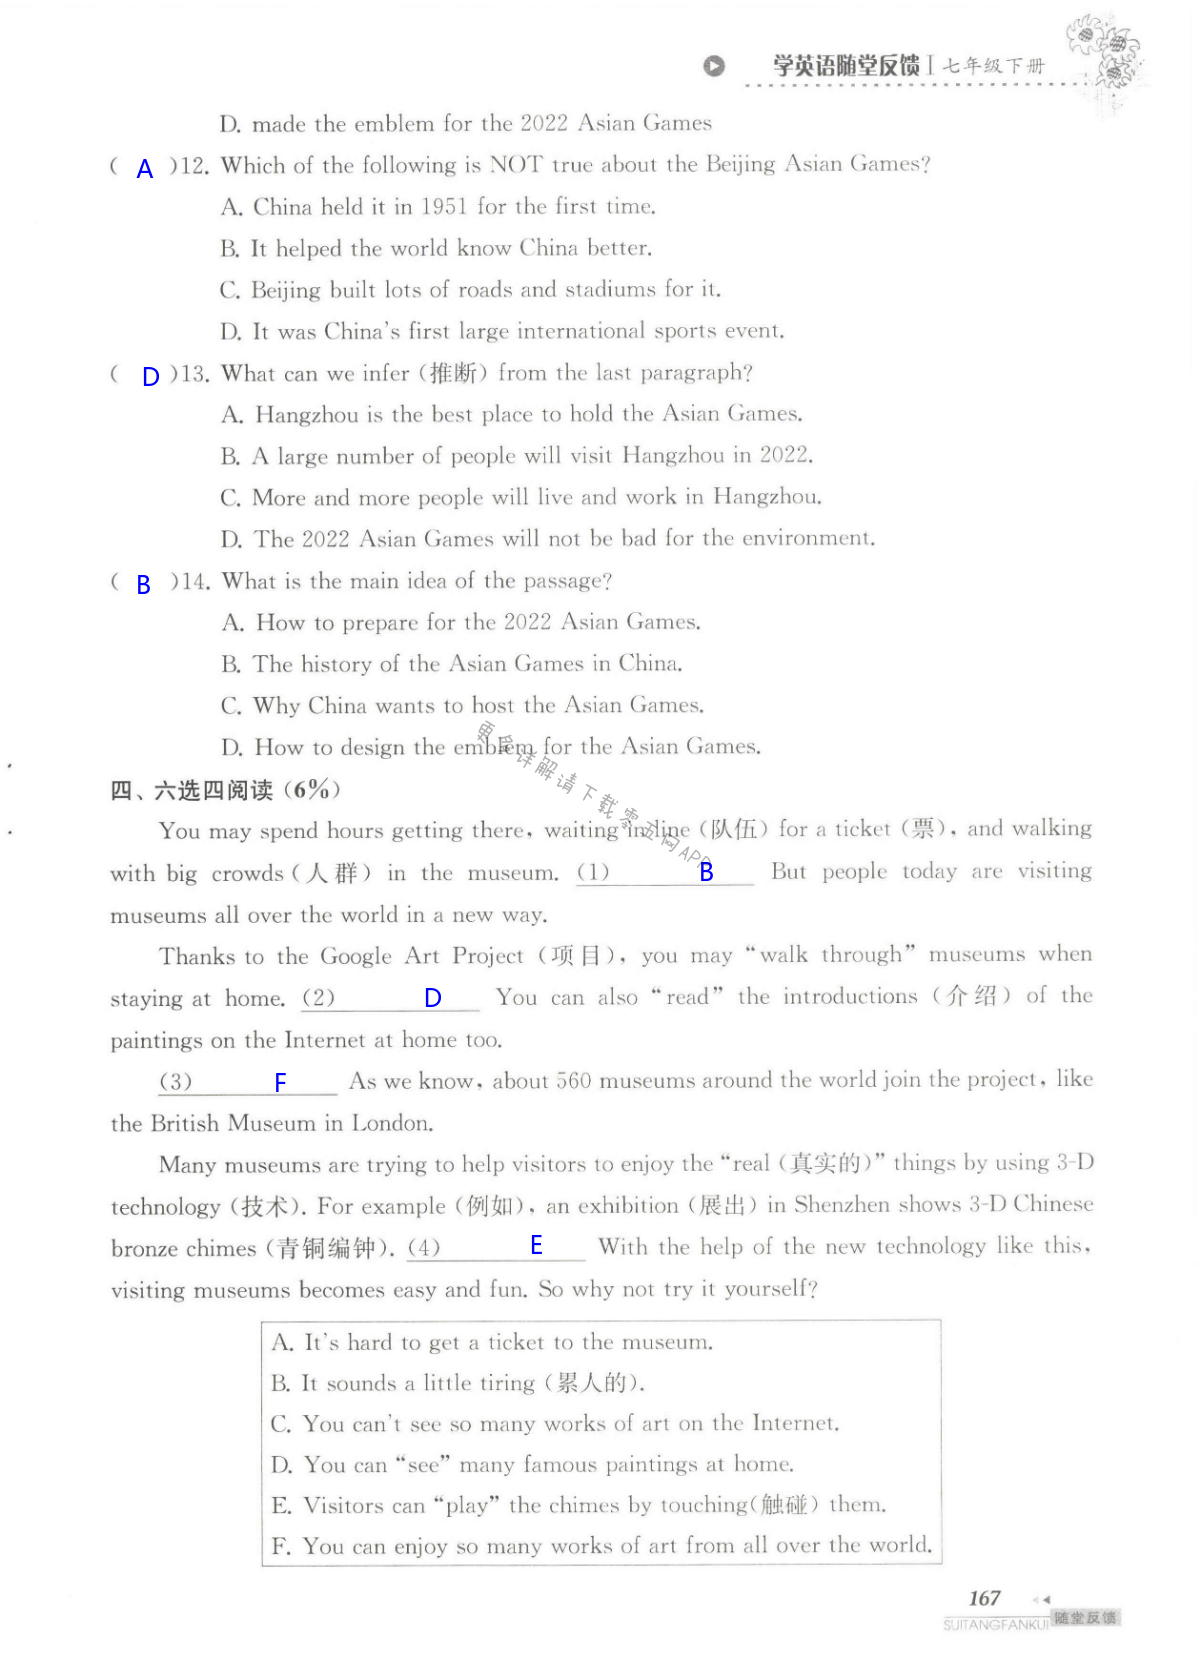 单元综合测试卷   Test for Unit 6 of 7B - 第167页